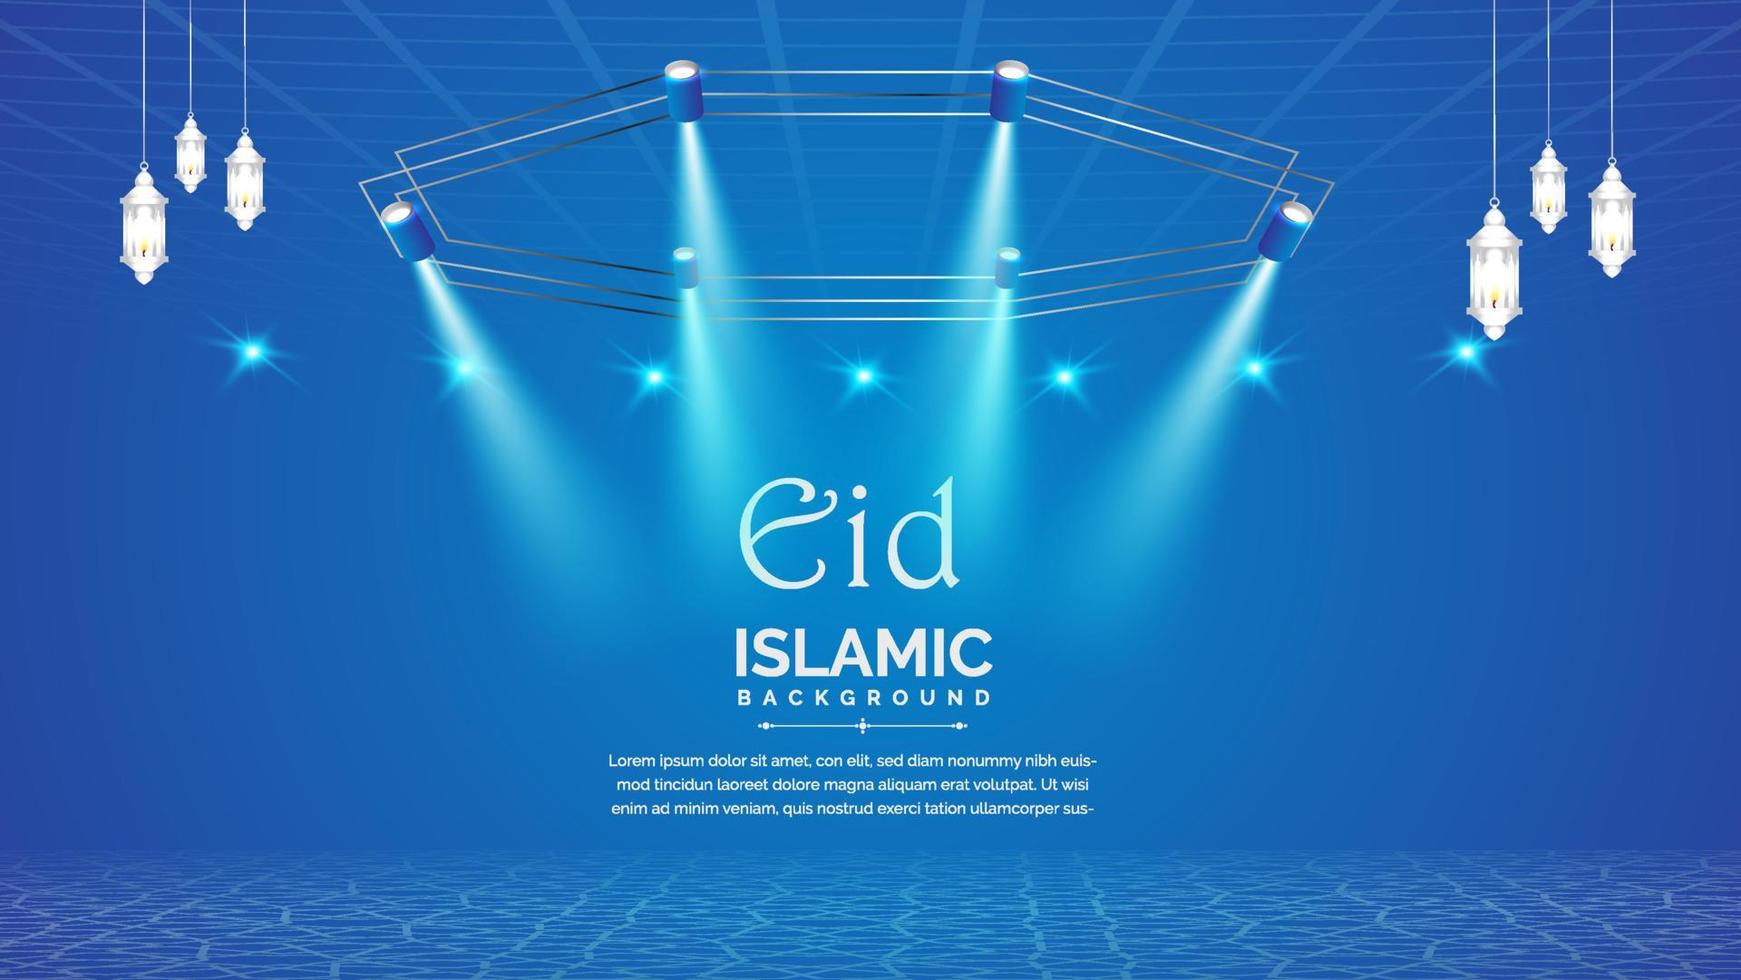 Islamitisch Arabisch blauw luxe achtergrond met verlichting vector